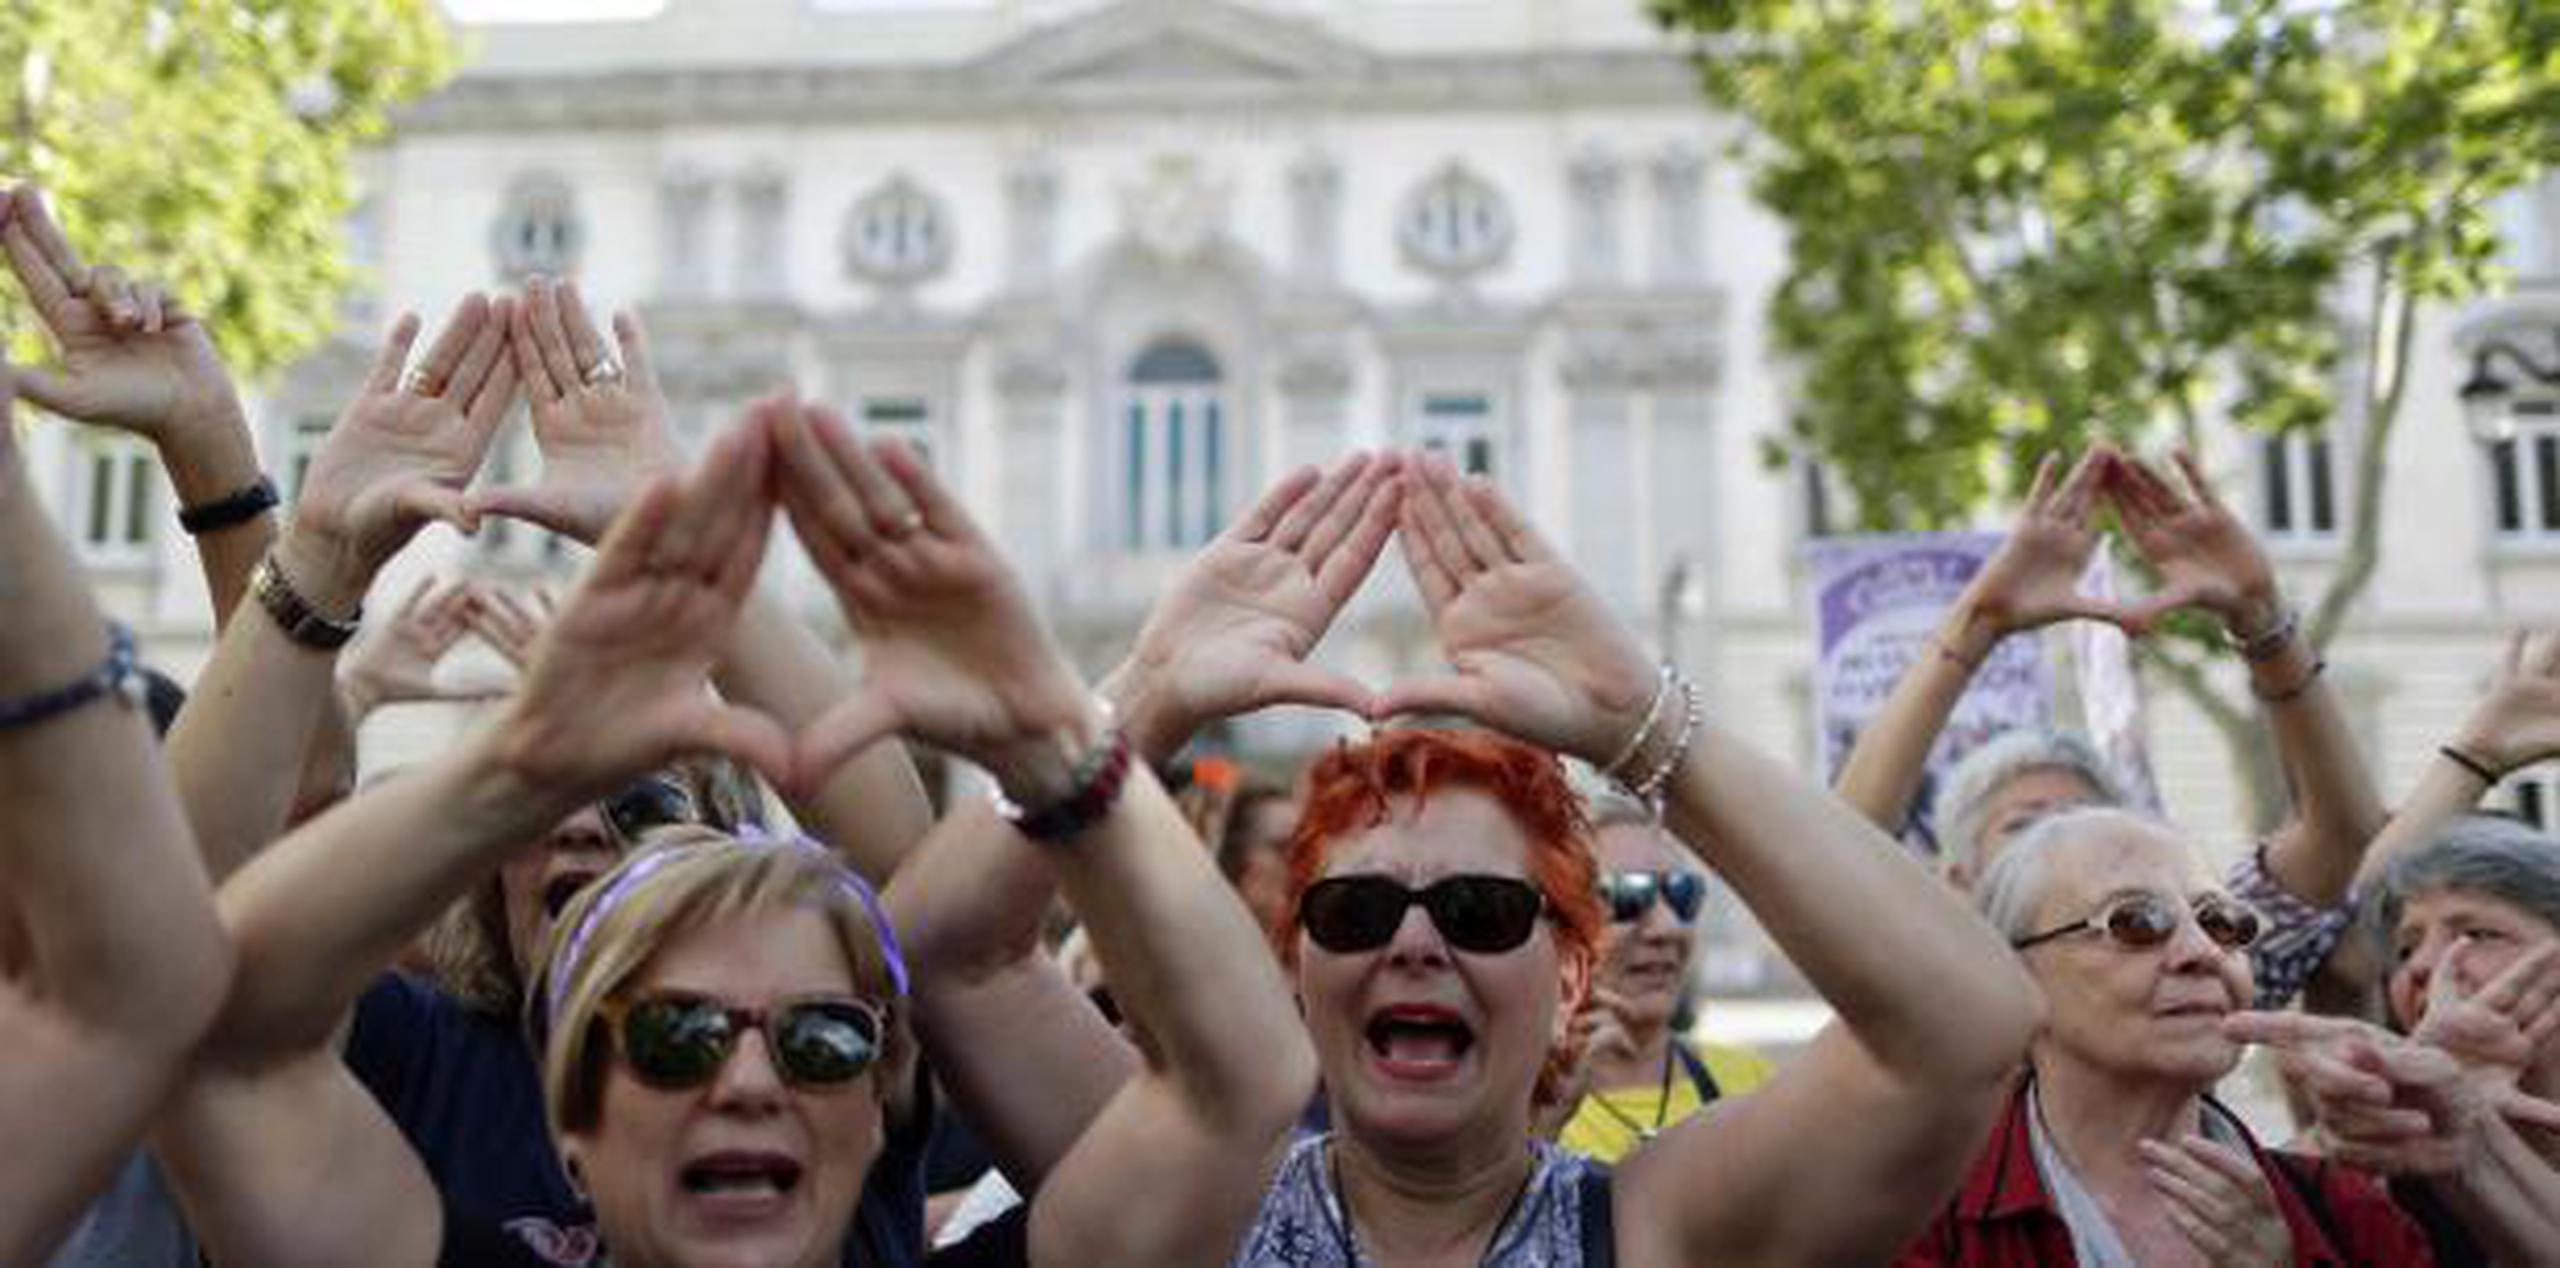 Manifestación en España en contra del abuso sexual, en concreto el ataque a una mujer por parte de un grupo de hombres apodado La Manada. (AP)